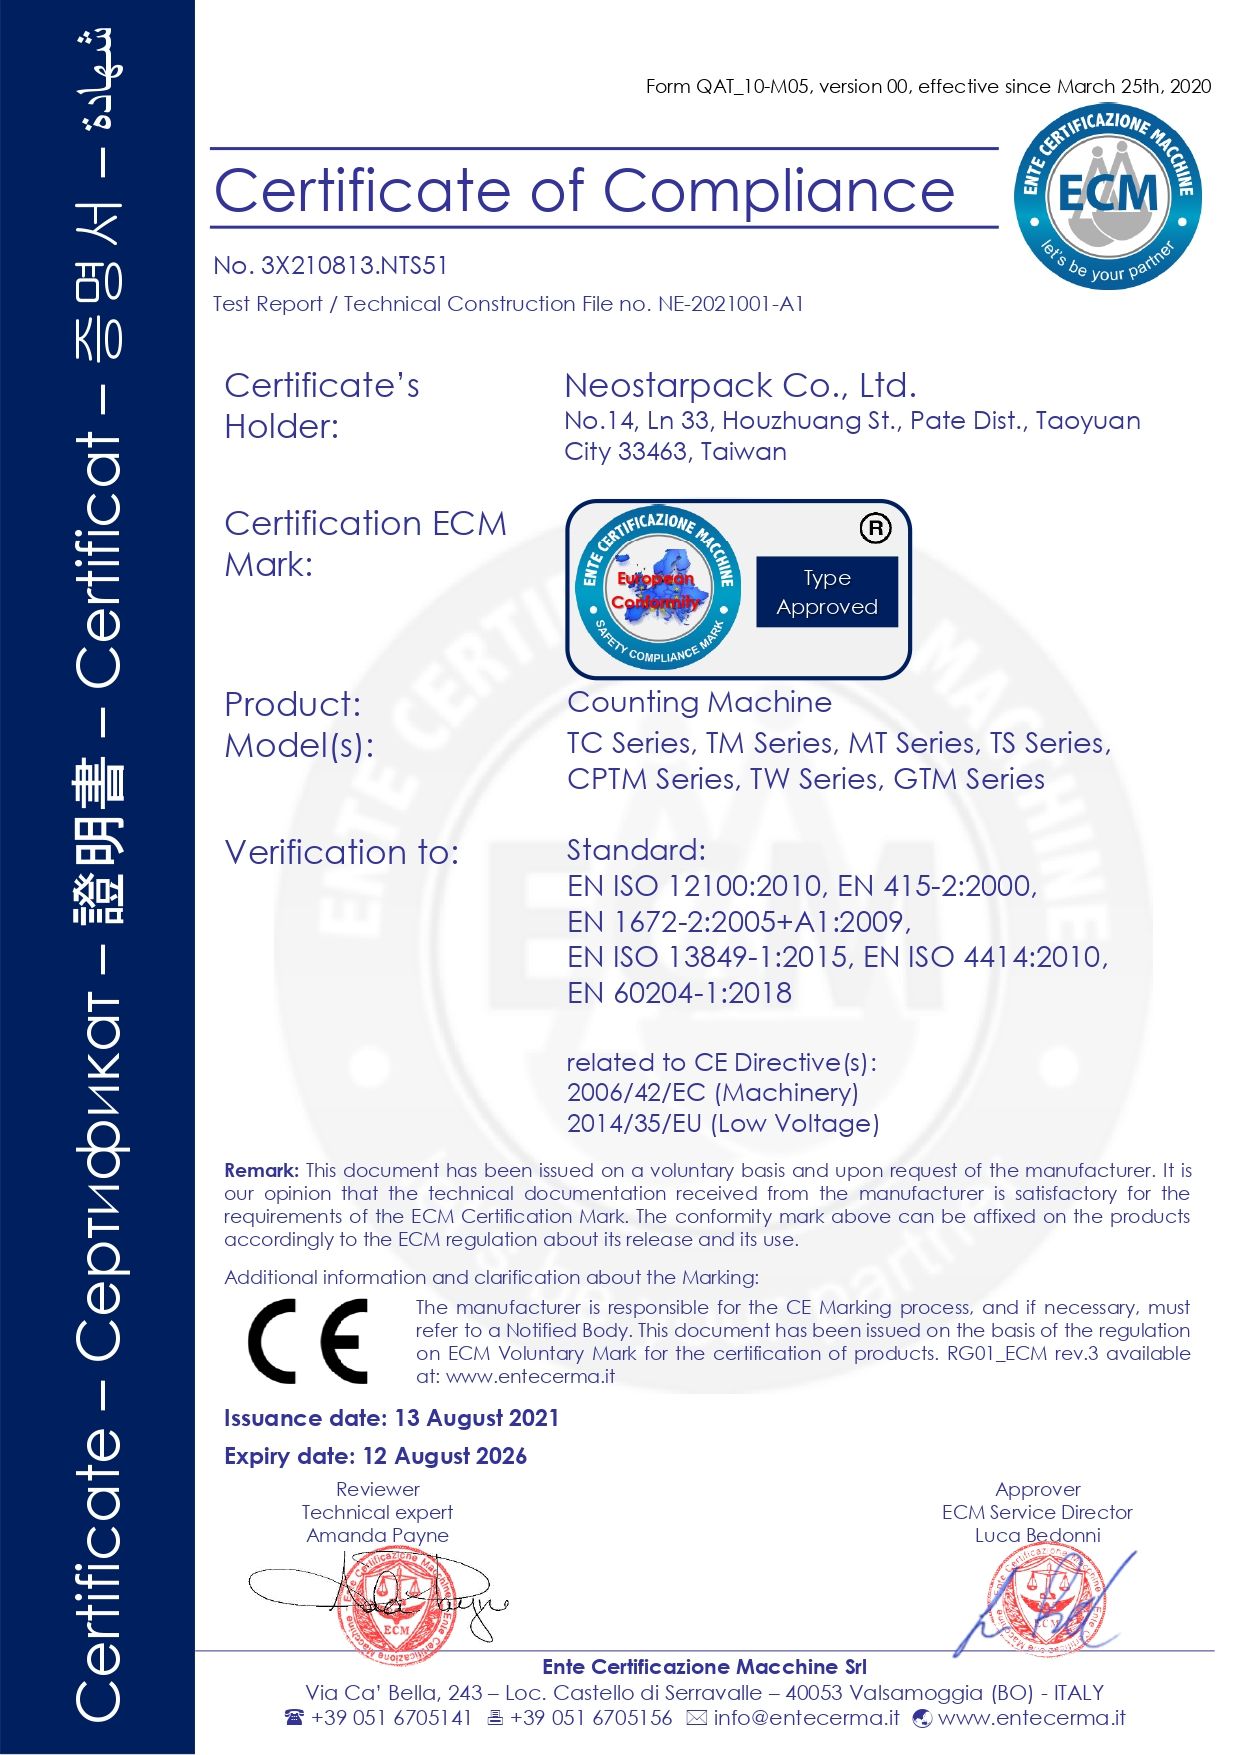 Mesin penghitung kapsul/tablet Neostarpack bersertifikasi CE